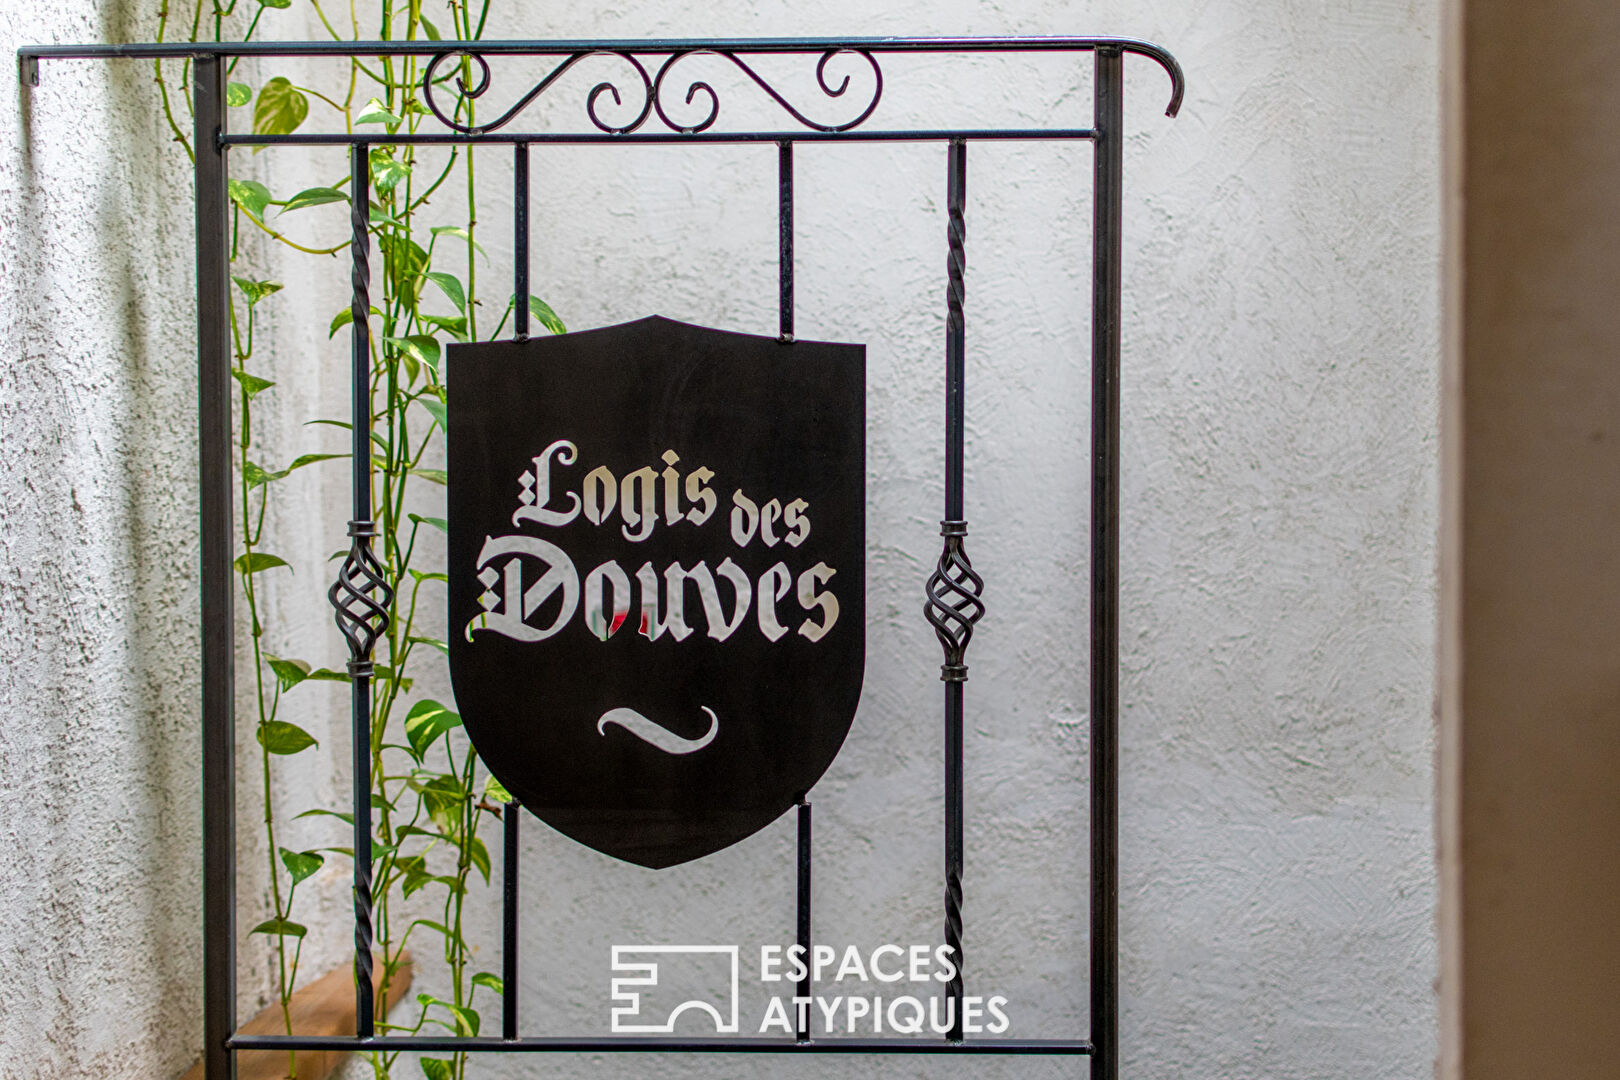 The Logis des Douves